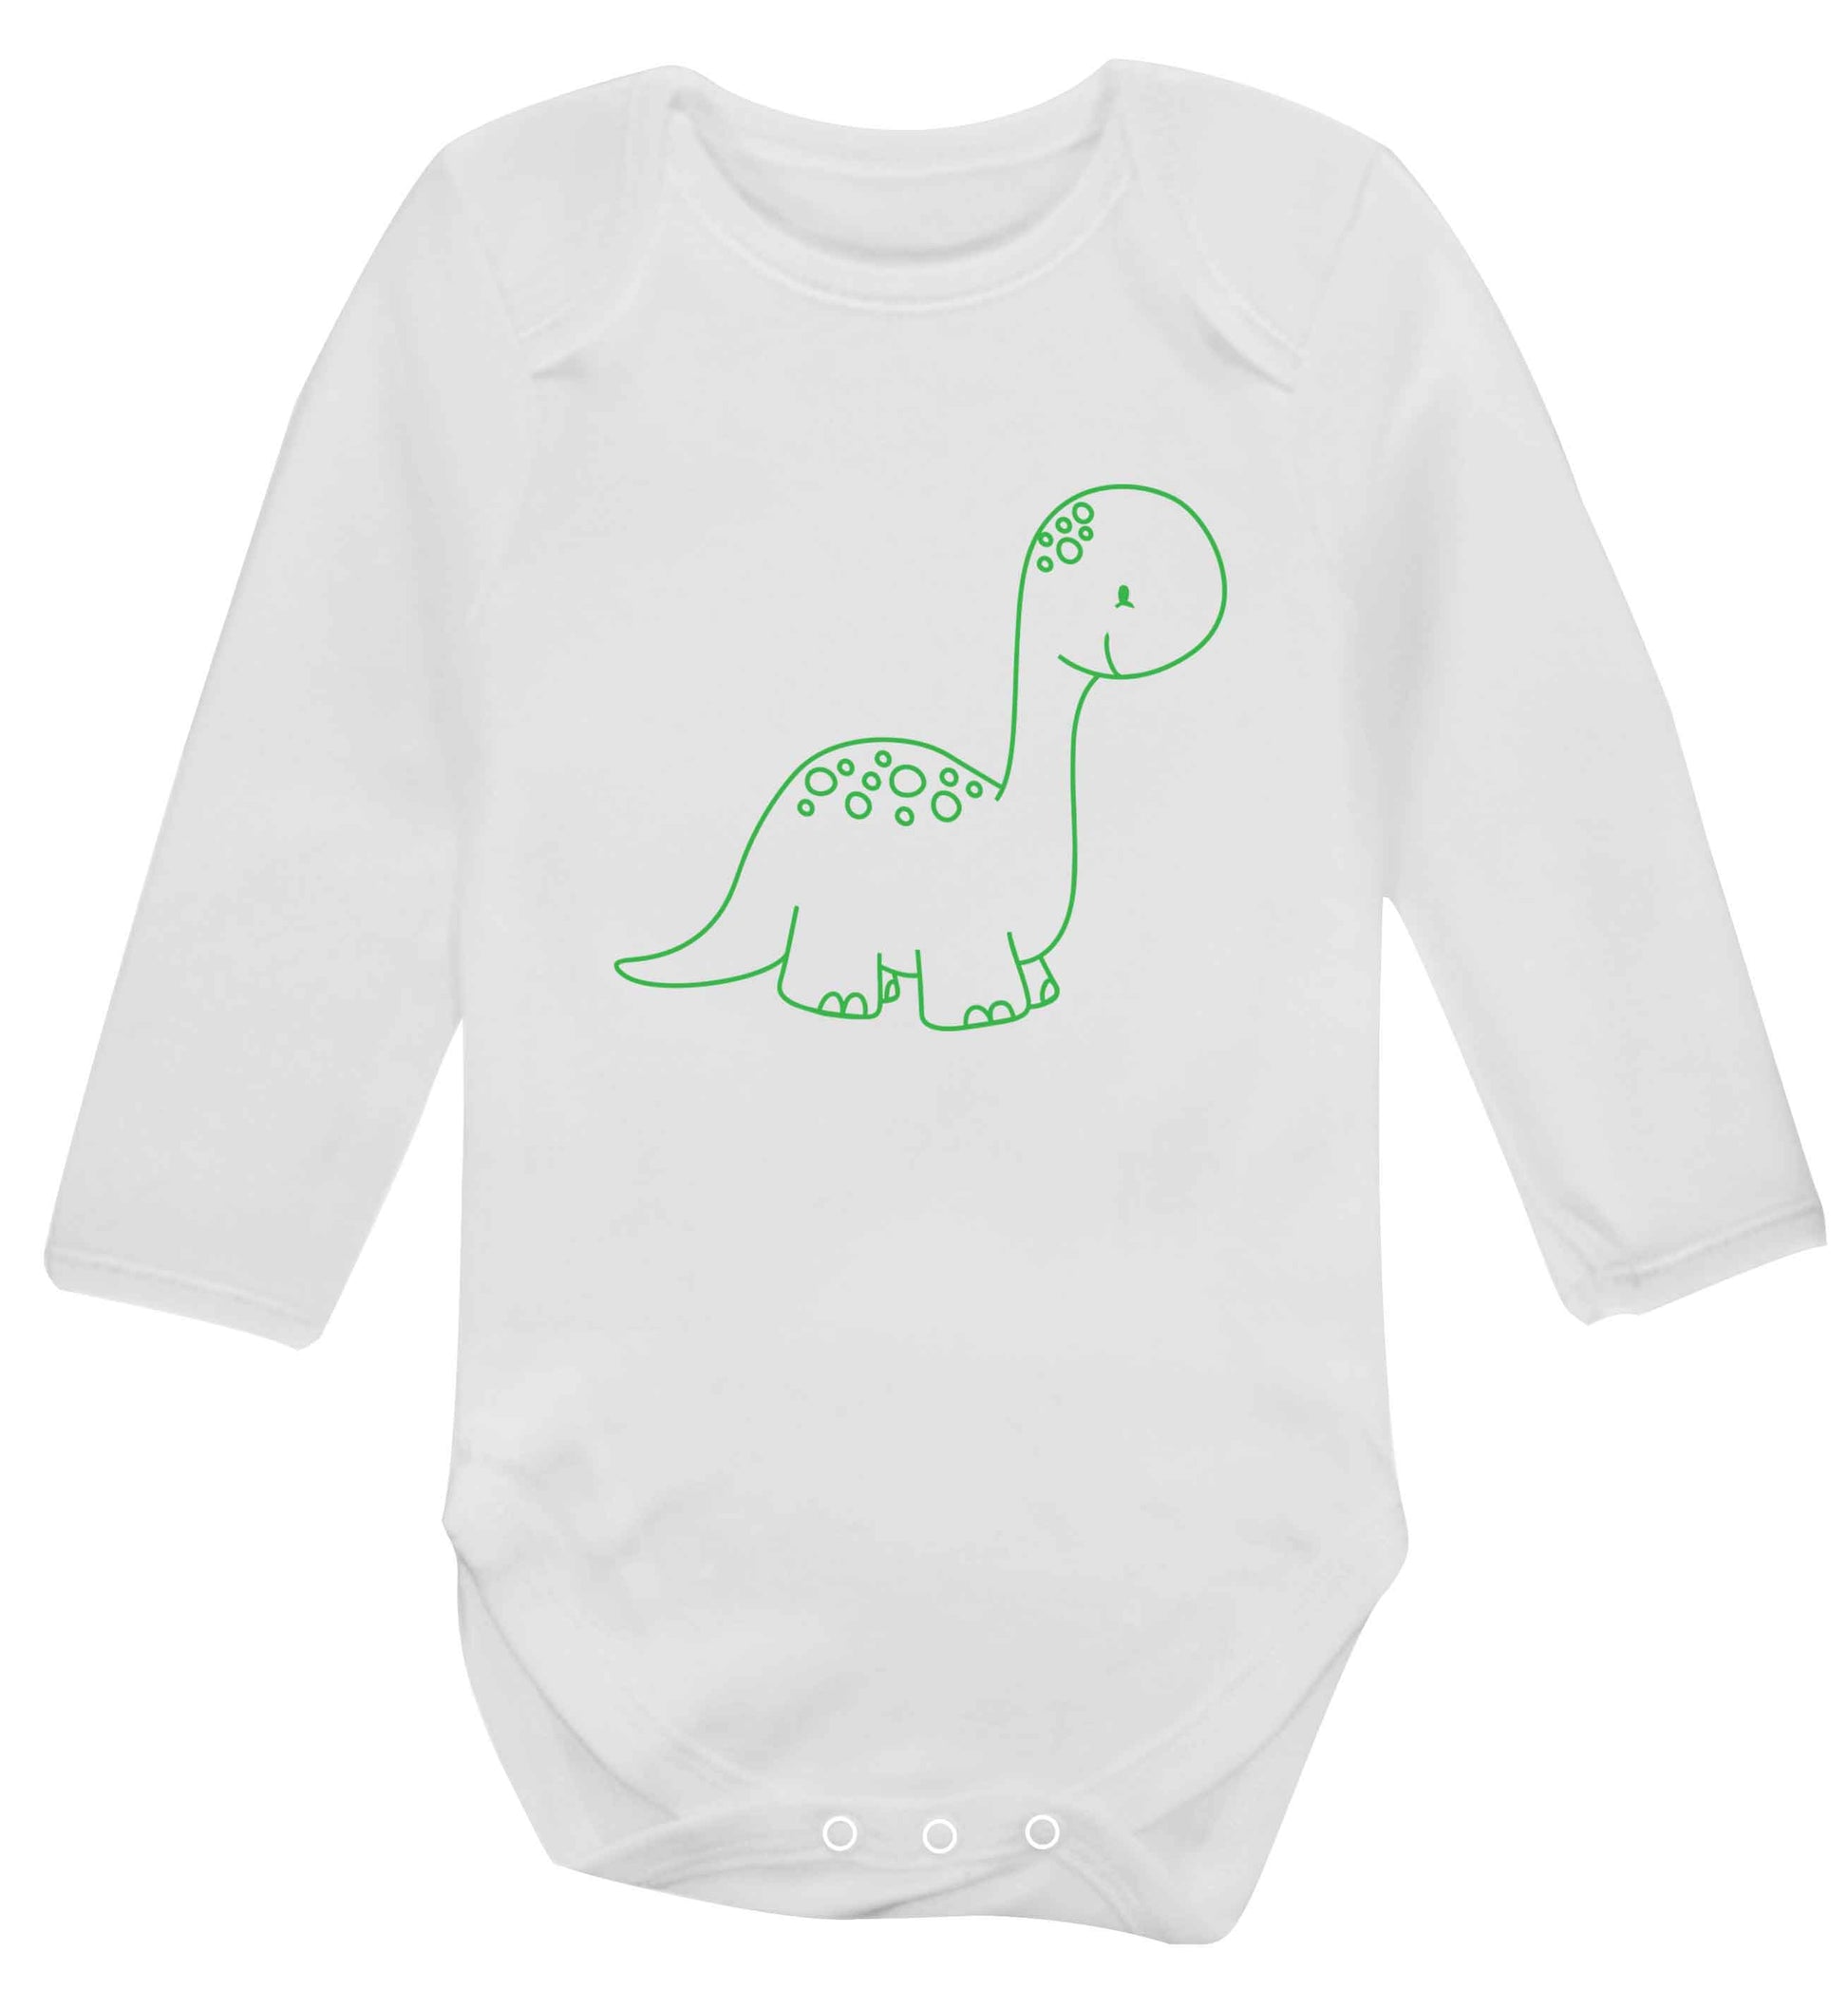 Dinosaur illustration baby vest long sleeved white 6-12 months